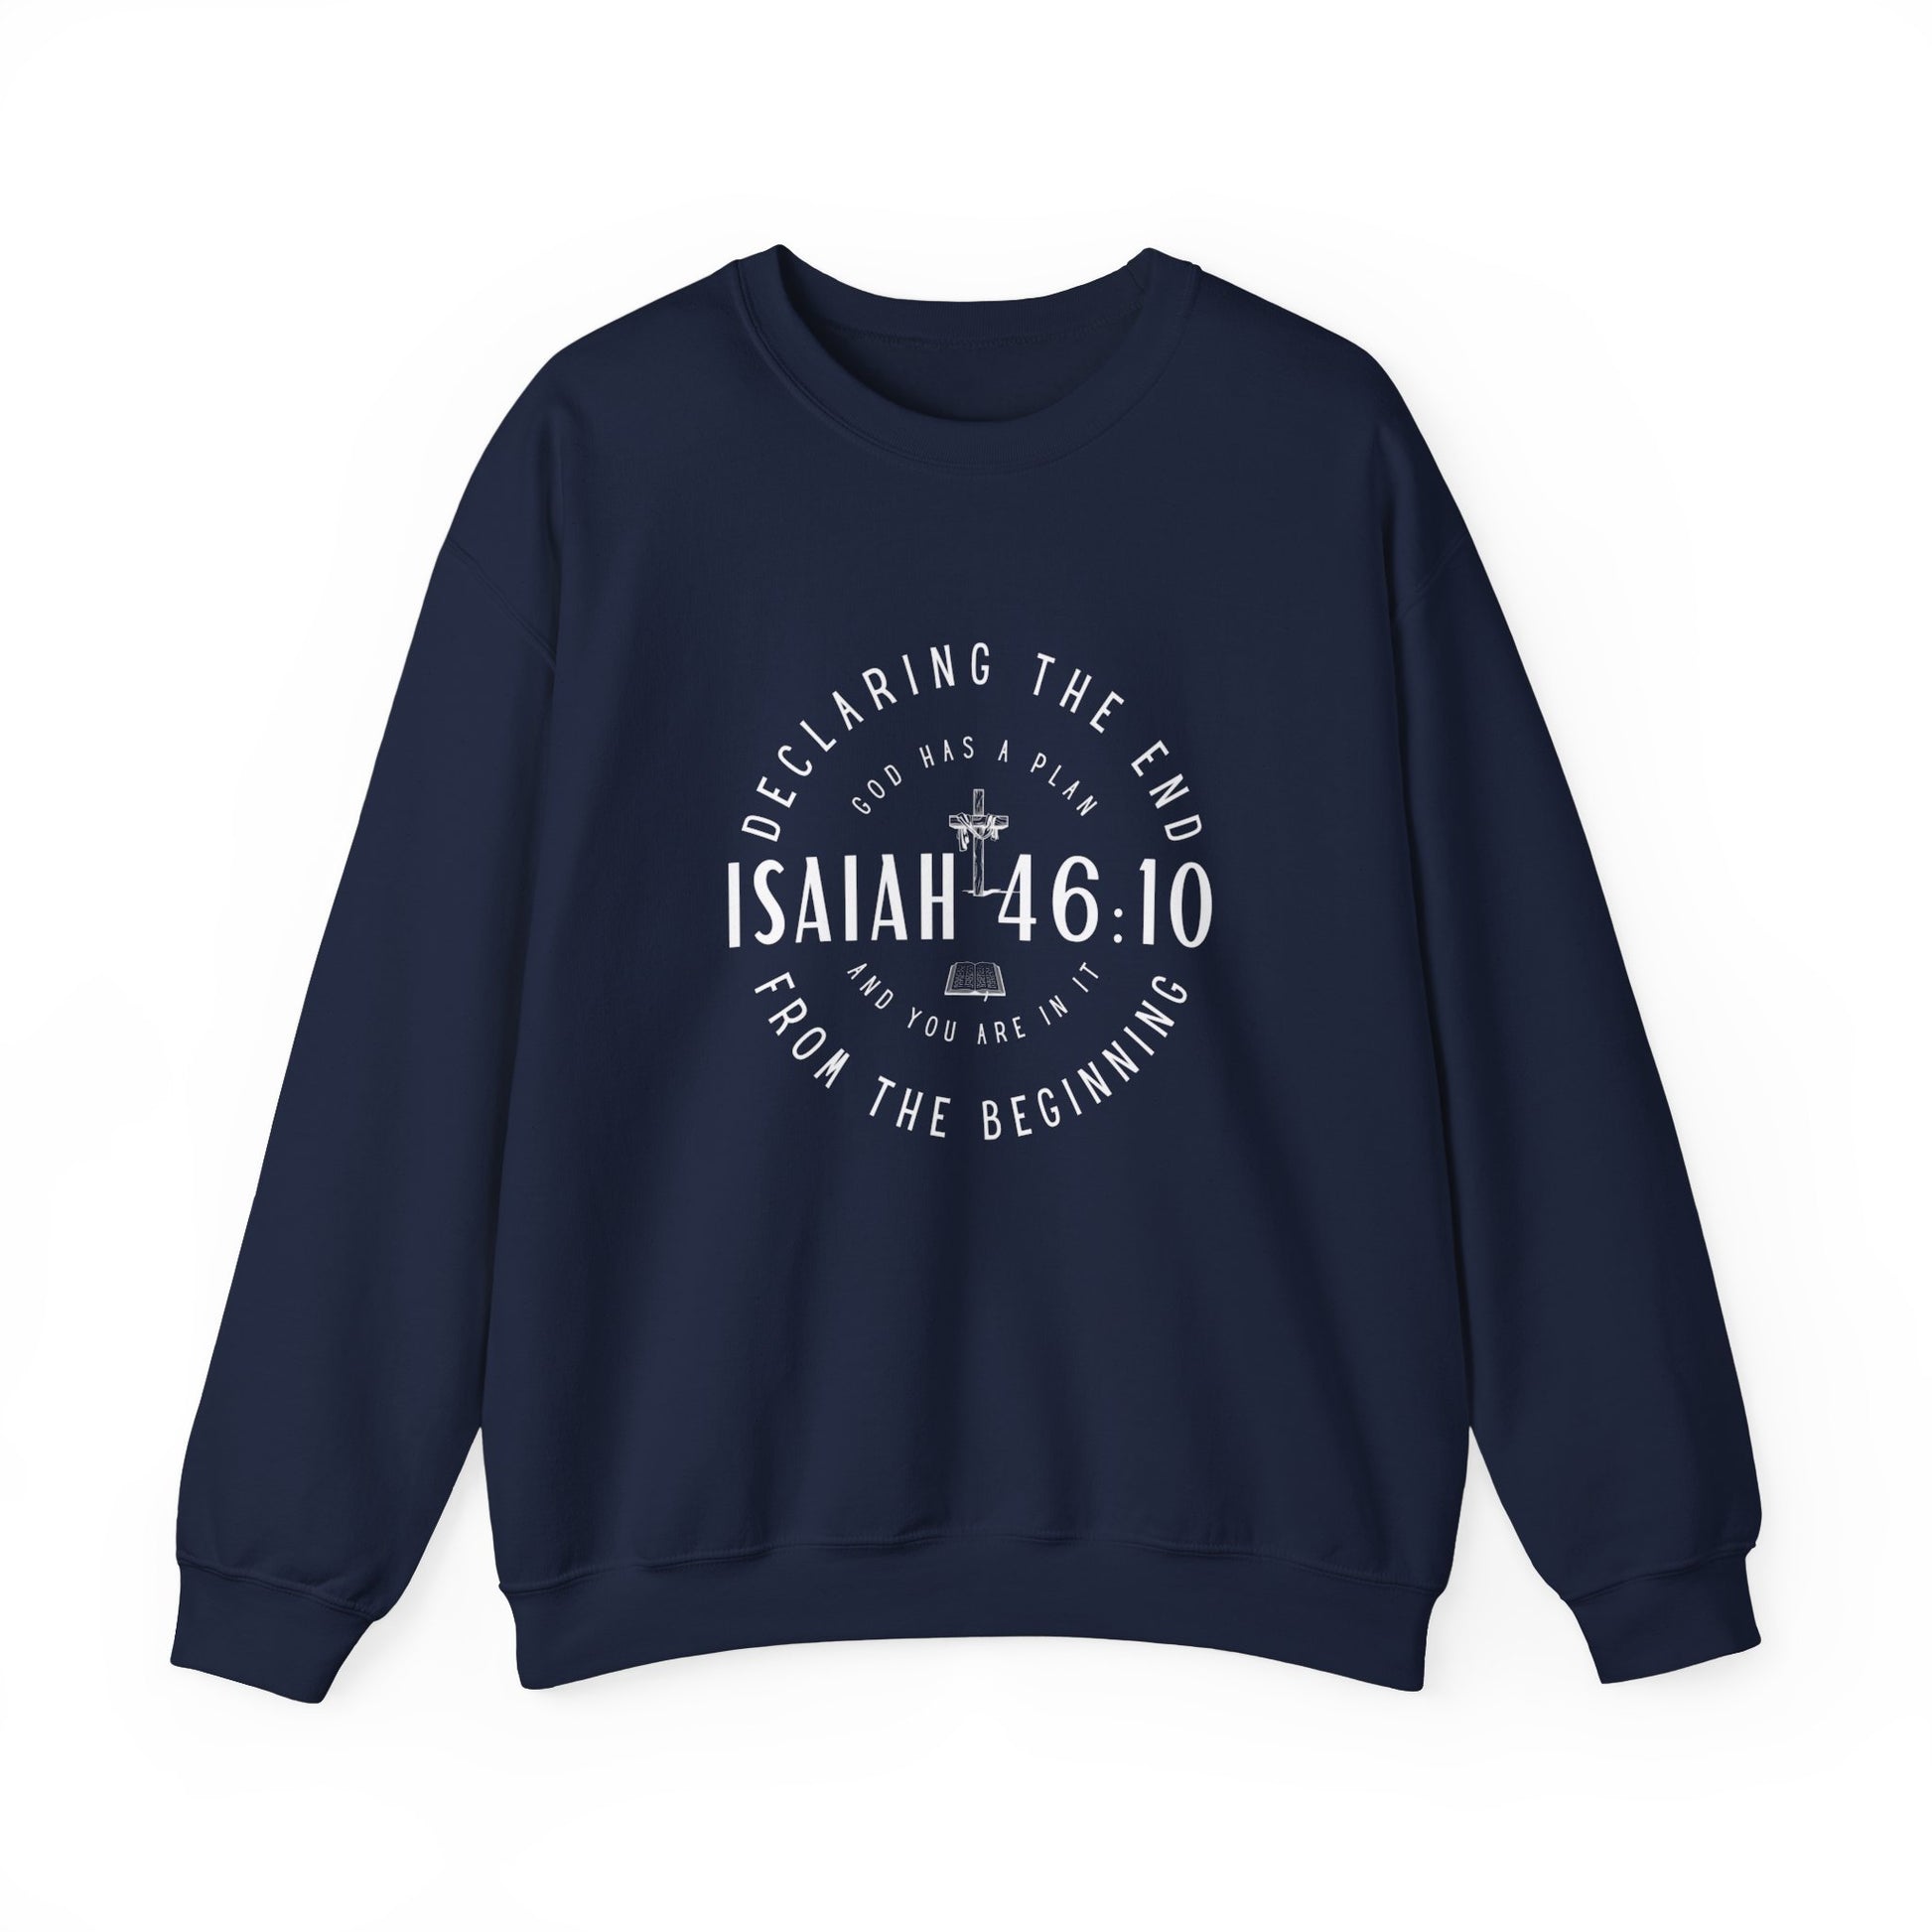 Sweatshirt, Isaiah 46.10, Gildan 18000, men and women, navy